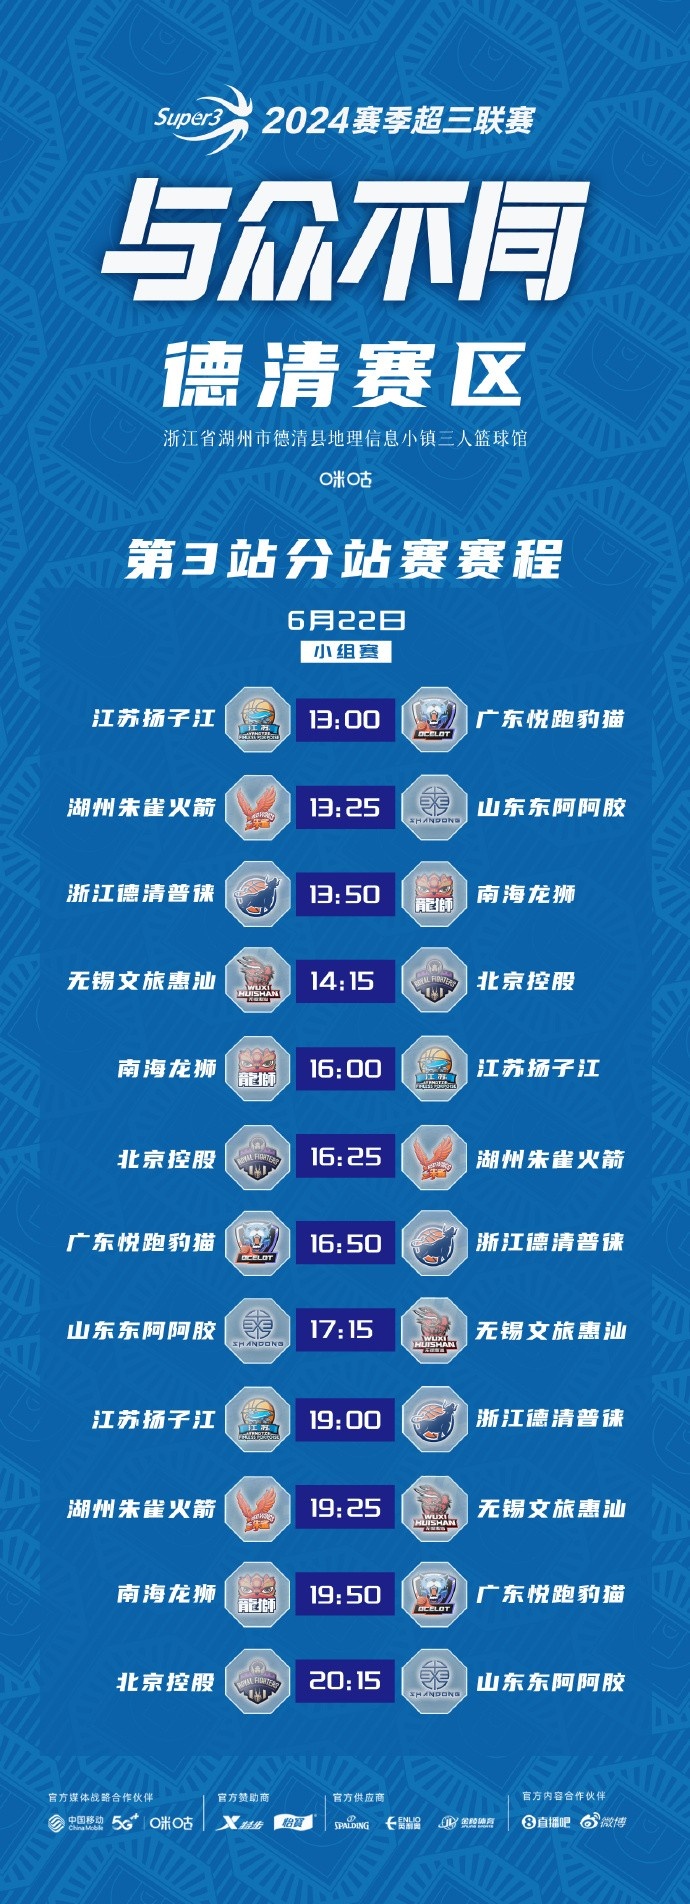 超三联赛德清赛区第3站、贵阳赛区第2站比赛Day16月22日开战！